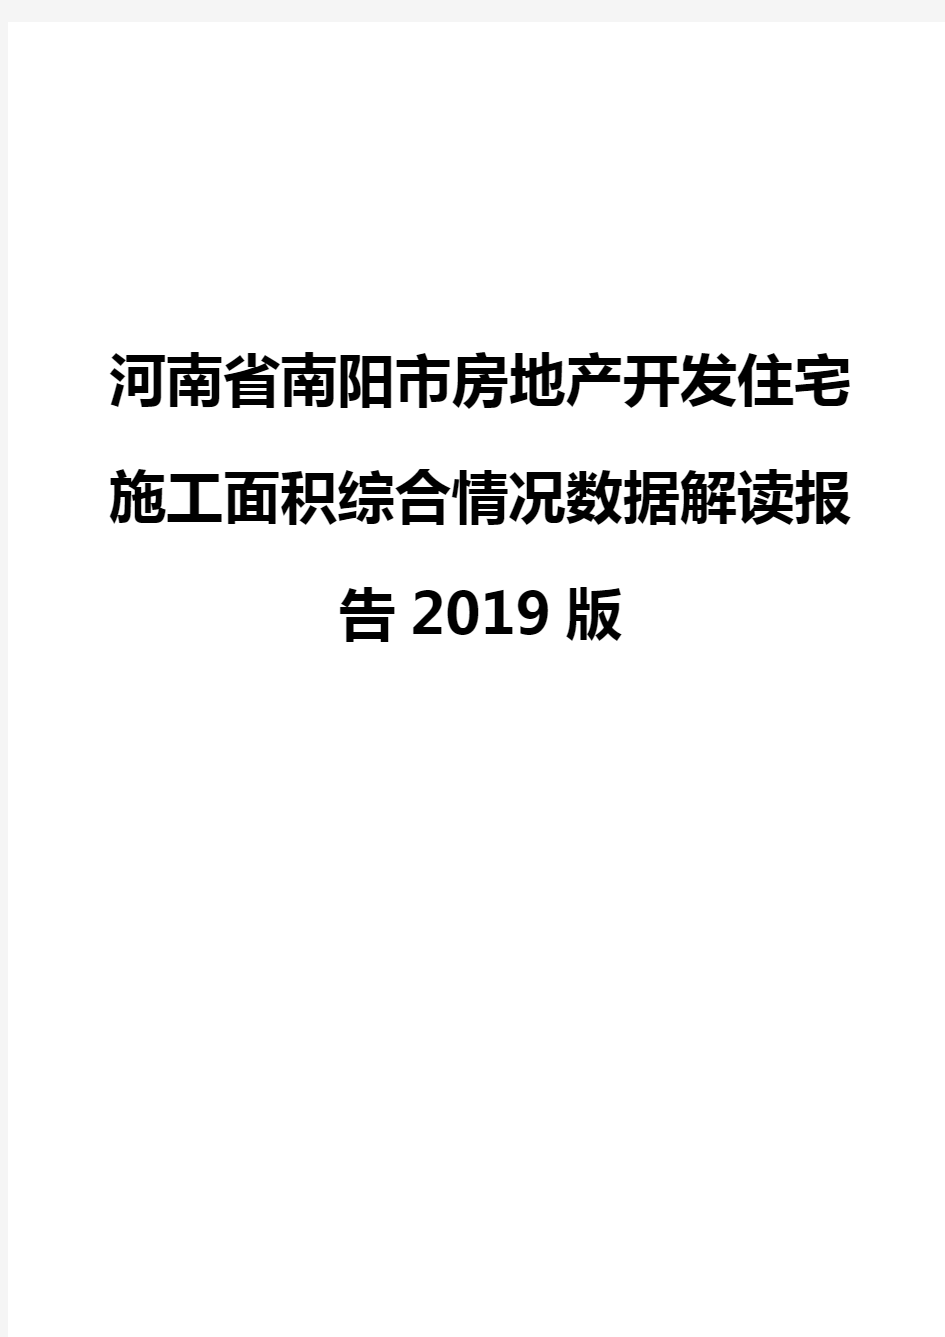 河南省南阳市房地产开发住宅施工面积综合情况数据解读报告2019版